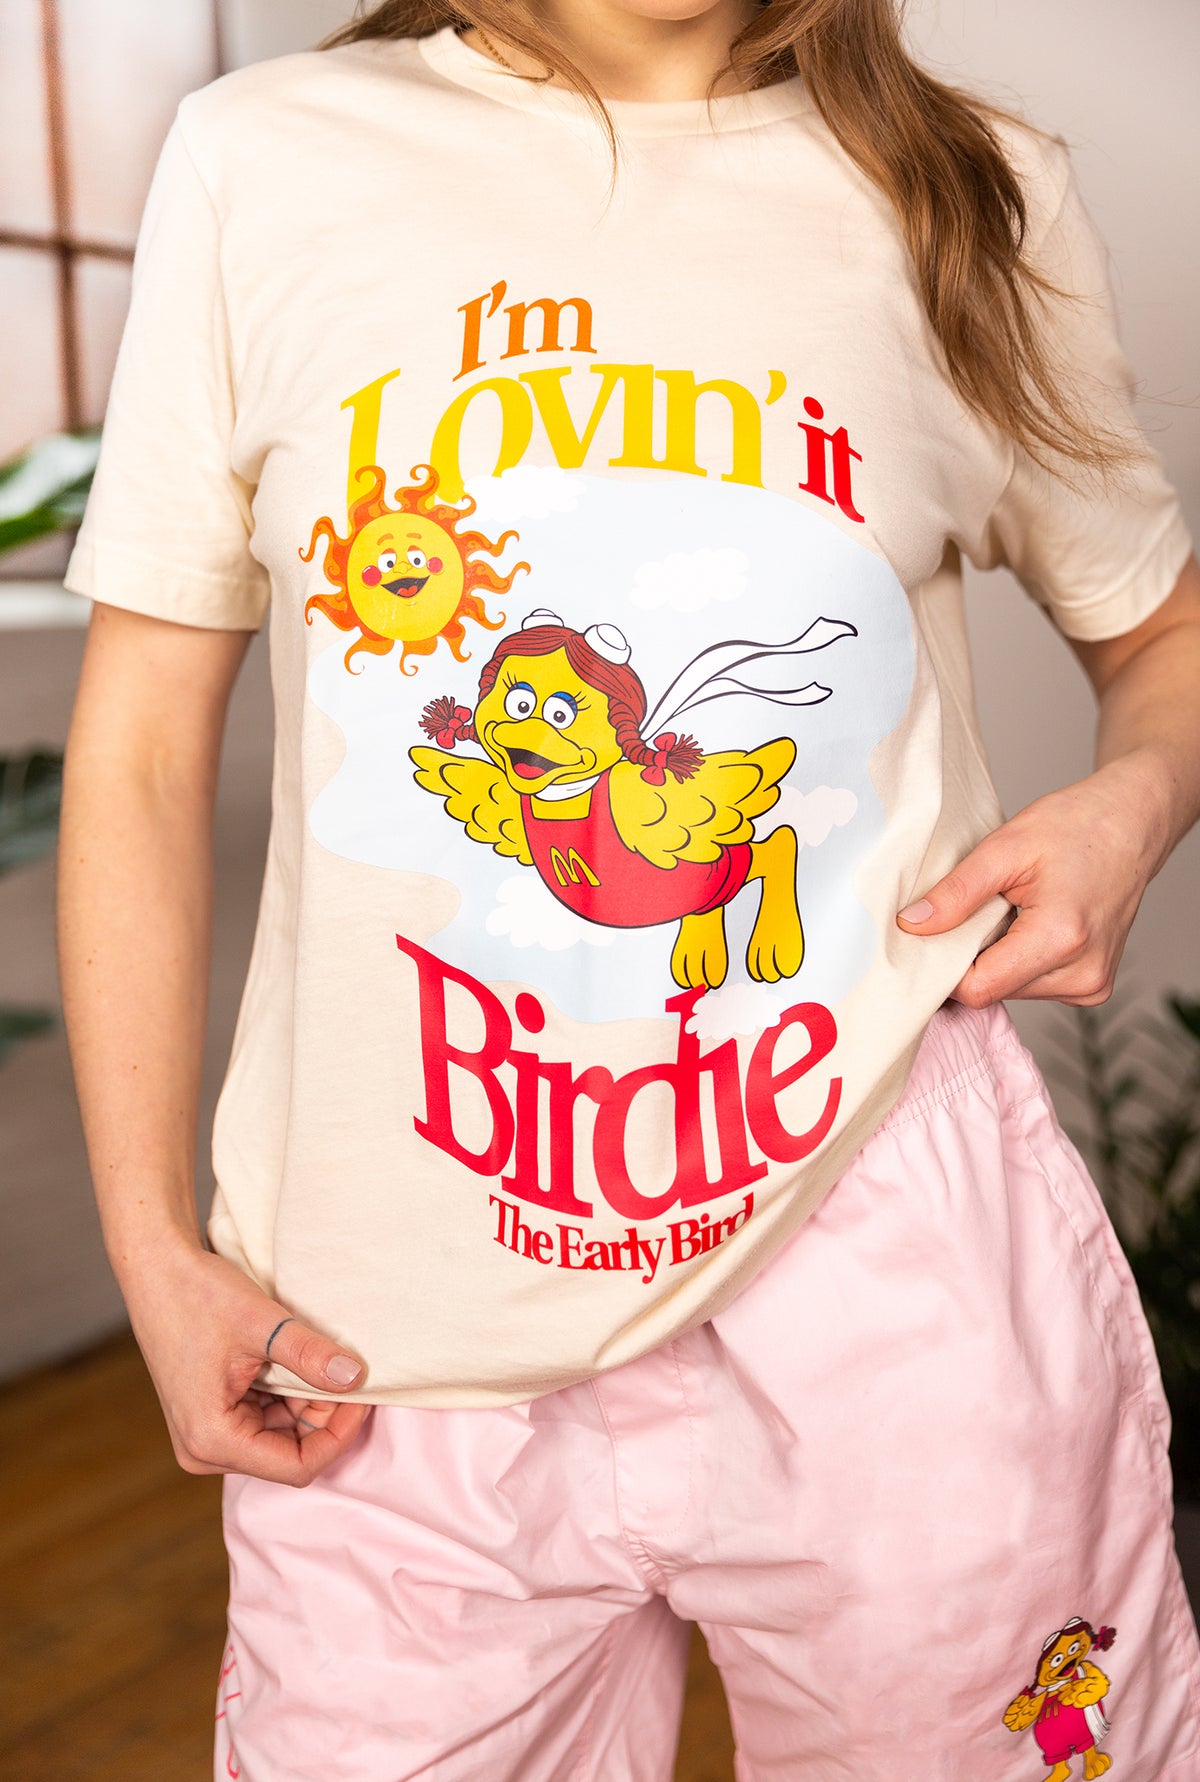 I'm Lovin' It Birdie T-Shirt - Ivory